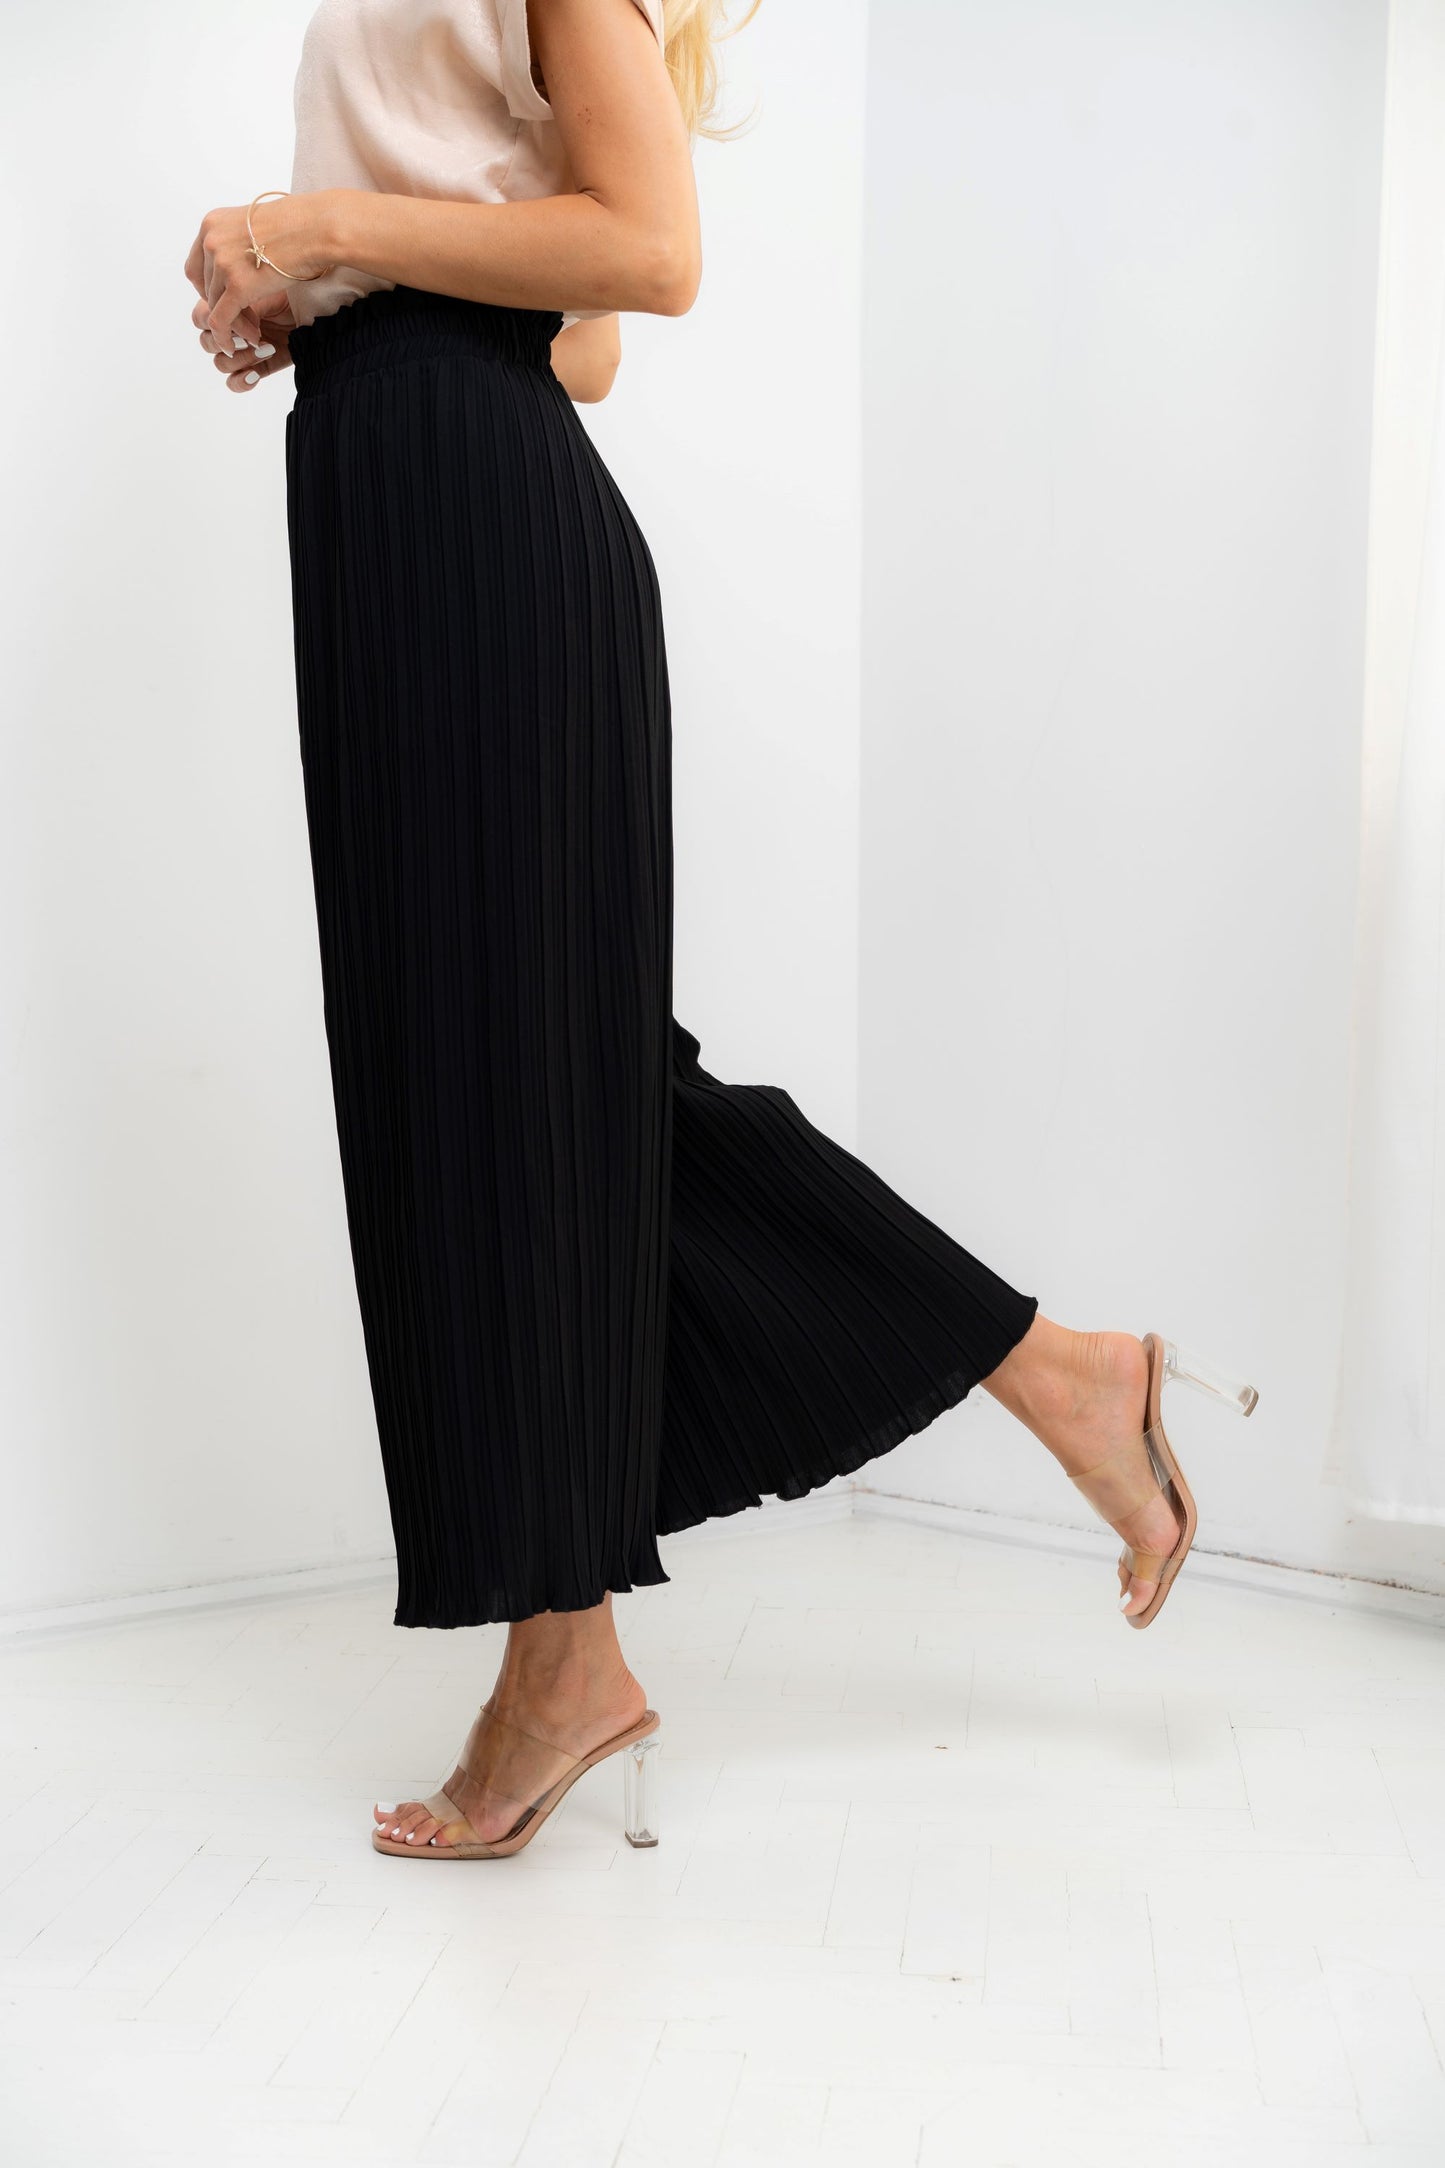 Dubai - Fusta-pantalon plisat, elegant, negru